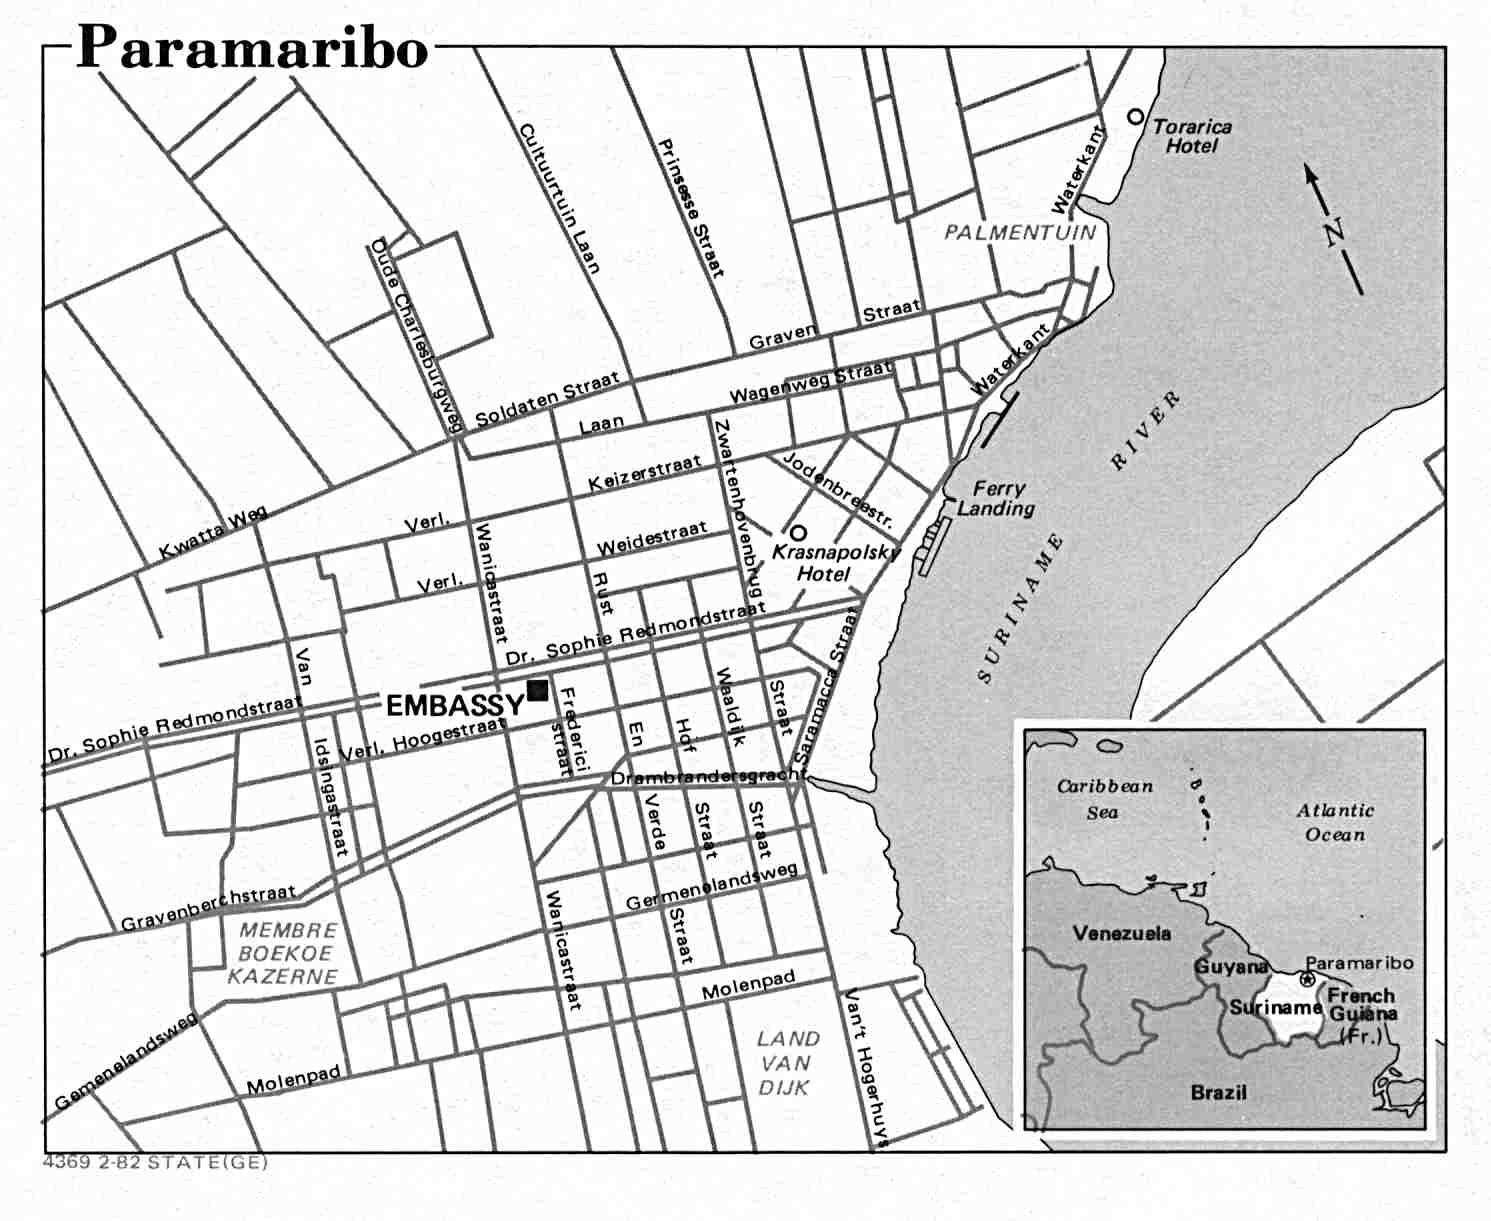 paramaribo plan - Image